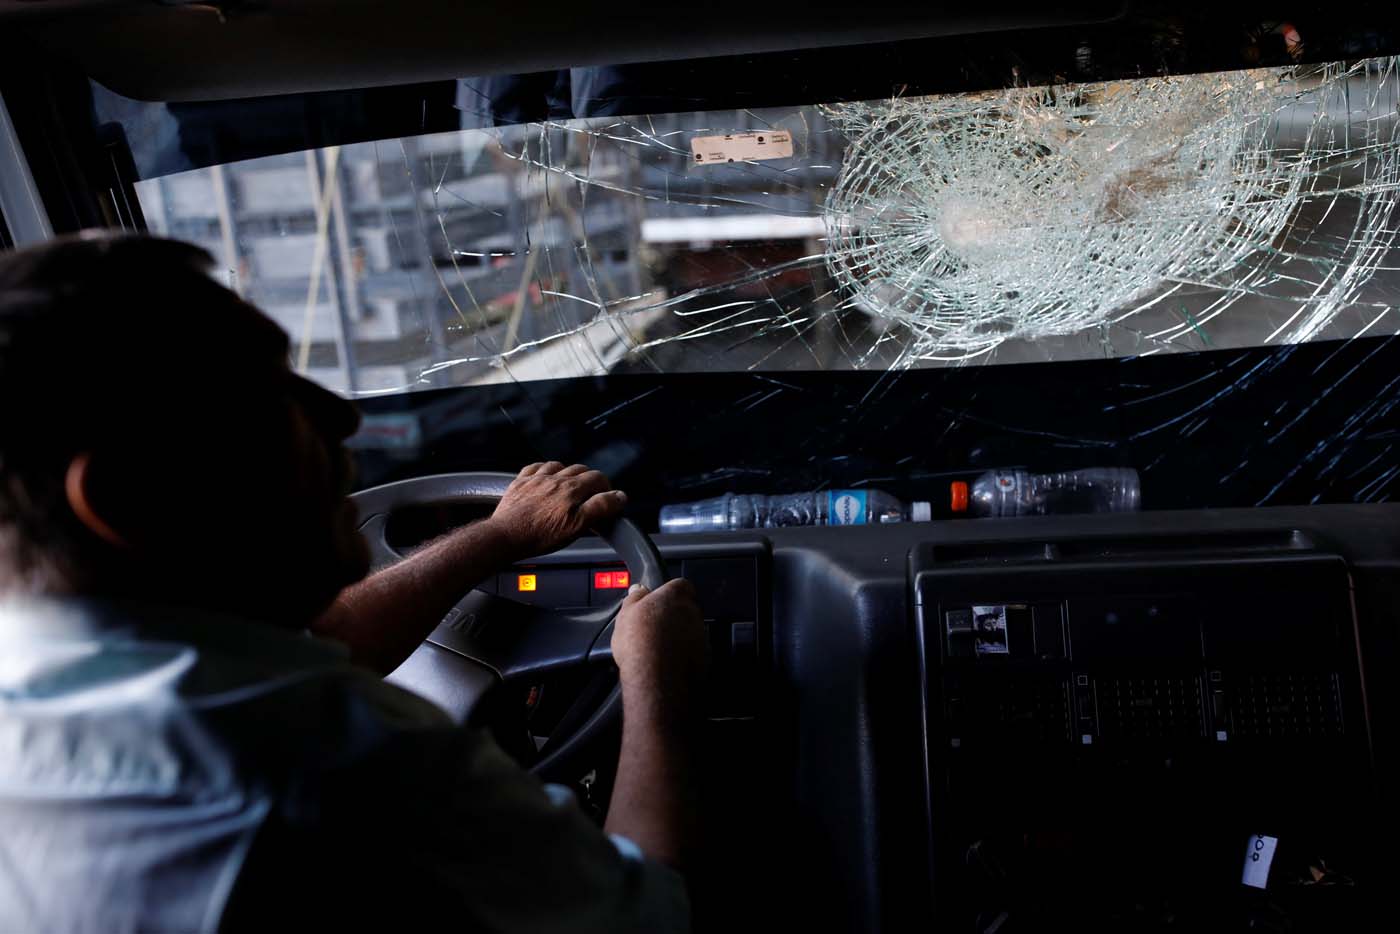 Mad Max en Venezuela: Camioneros enfrentan saqueos y asesinatos en carreteras sin ley (FOTOS)